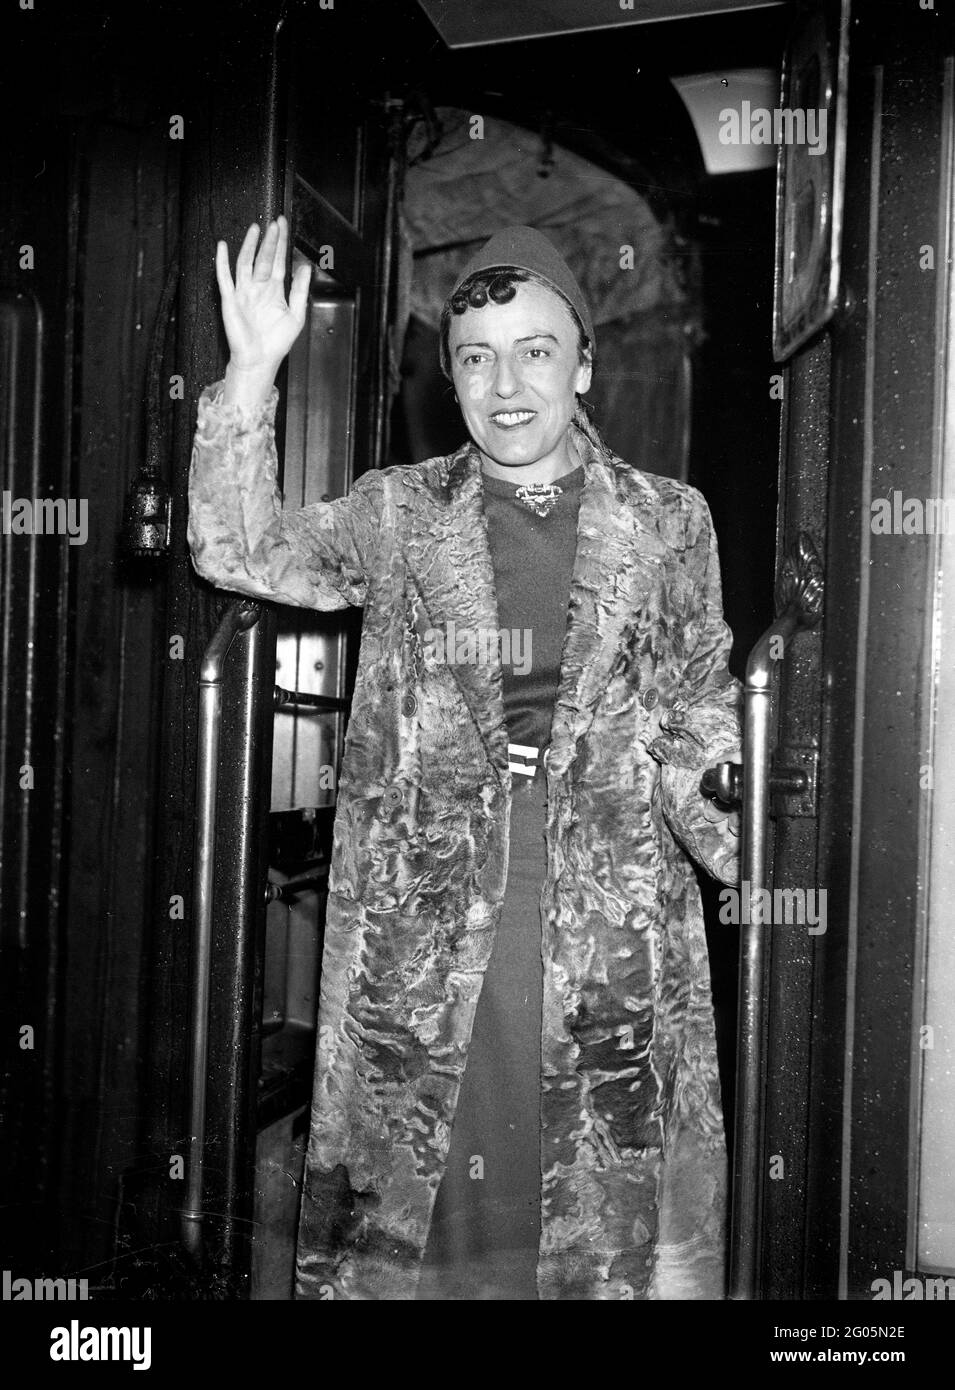 Sali a bordo del treno 'RMS Queen Mary' per la sua prima visita alla romanziera e drammaturgo inglese Dodie Smith (1896 - 1990) che indossa il suo camice da pelliccia alla stazione di Waterloo, Londra, 27 ottobre 1937. Dorothy Gladys 'Dodie' Smith. Autore dei cento ed uno dalmati. Moda della pelliccia Gran Bretagna 1930 1937 donne donna donna donna donna autore scrittore Kiss curl Kiss ricci moda flamboyant dresser vestendo donna attrice donna donna sventolare femmina treno di cattura in partenza Foto Stock